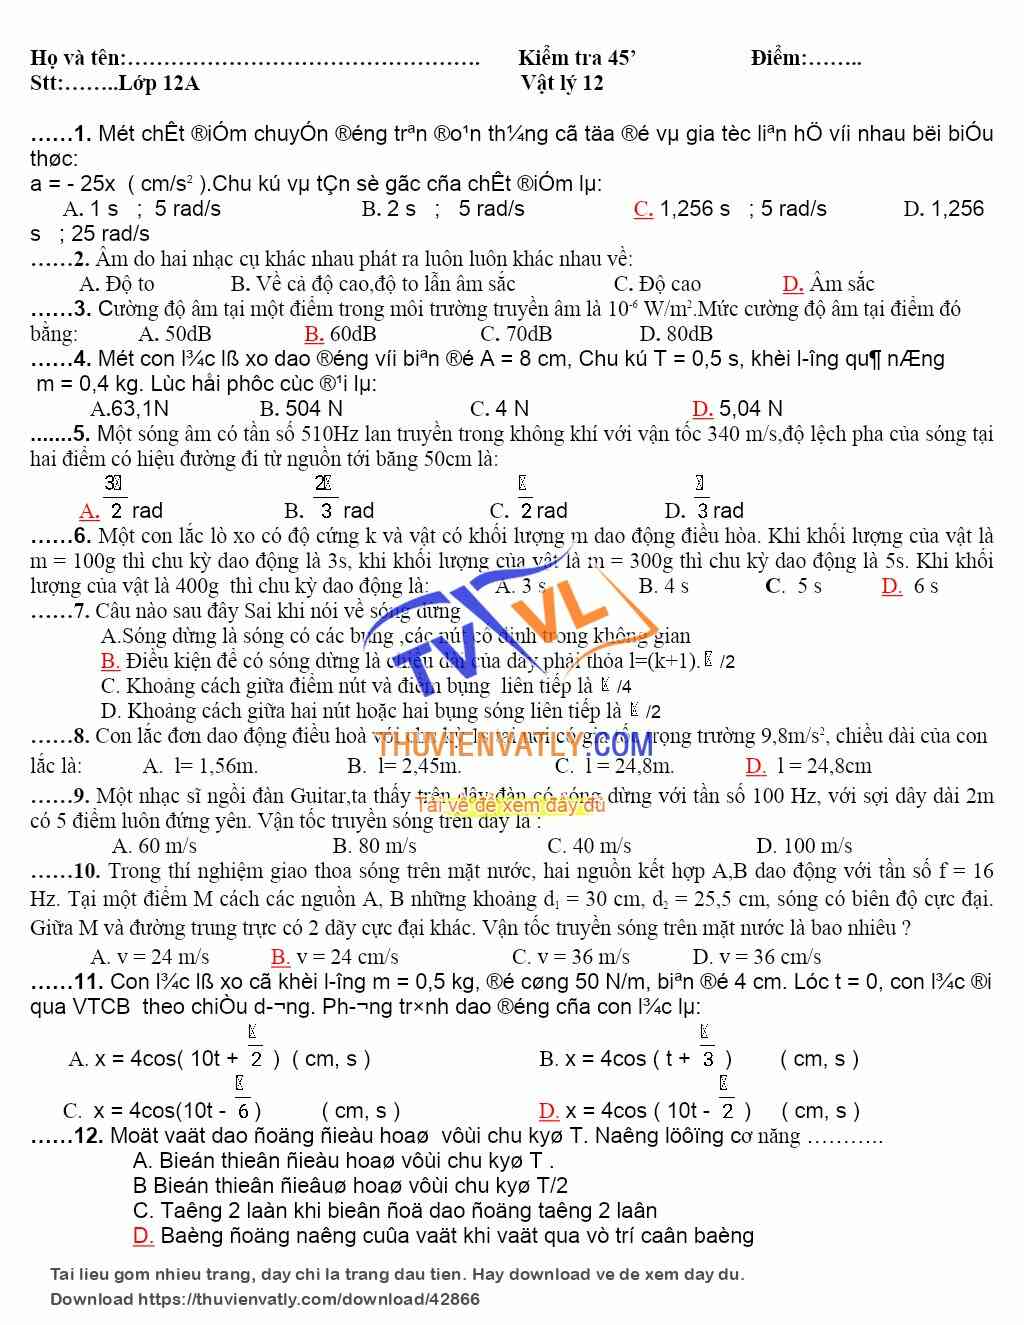 Bài kiểm tra vật lý lớp 12 chương I+II